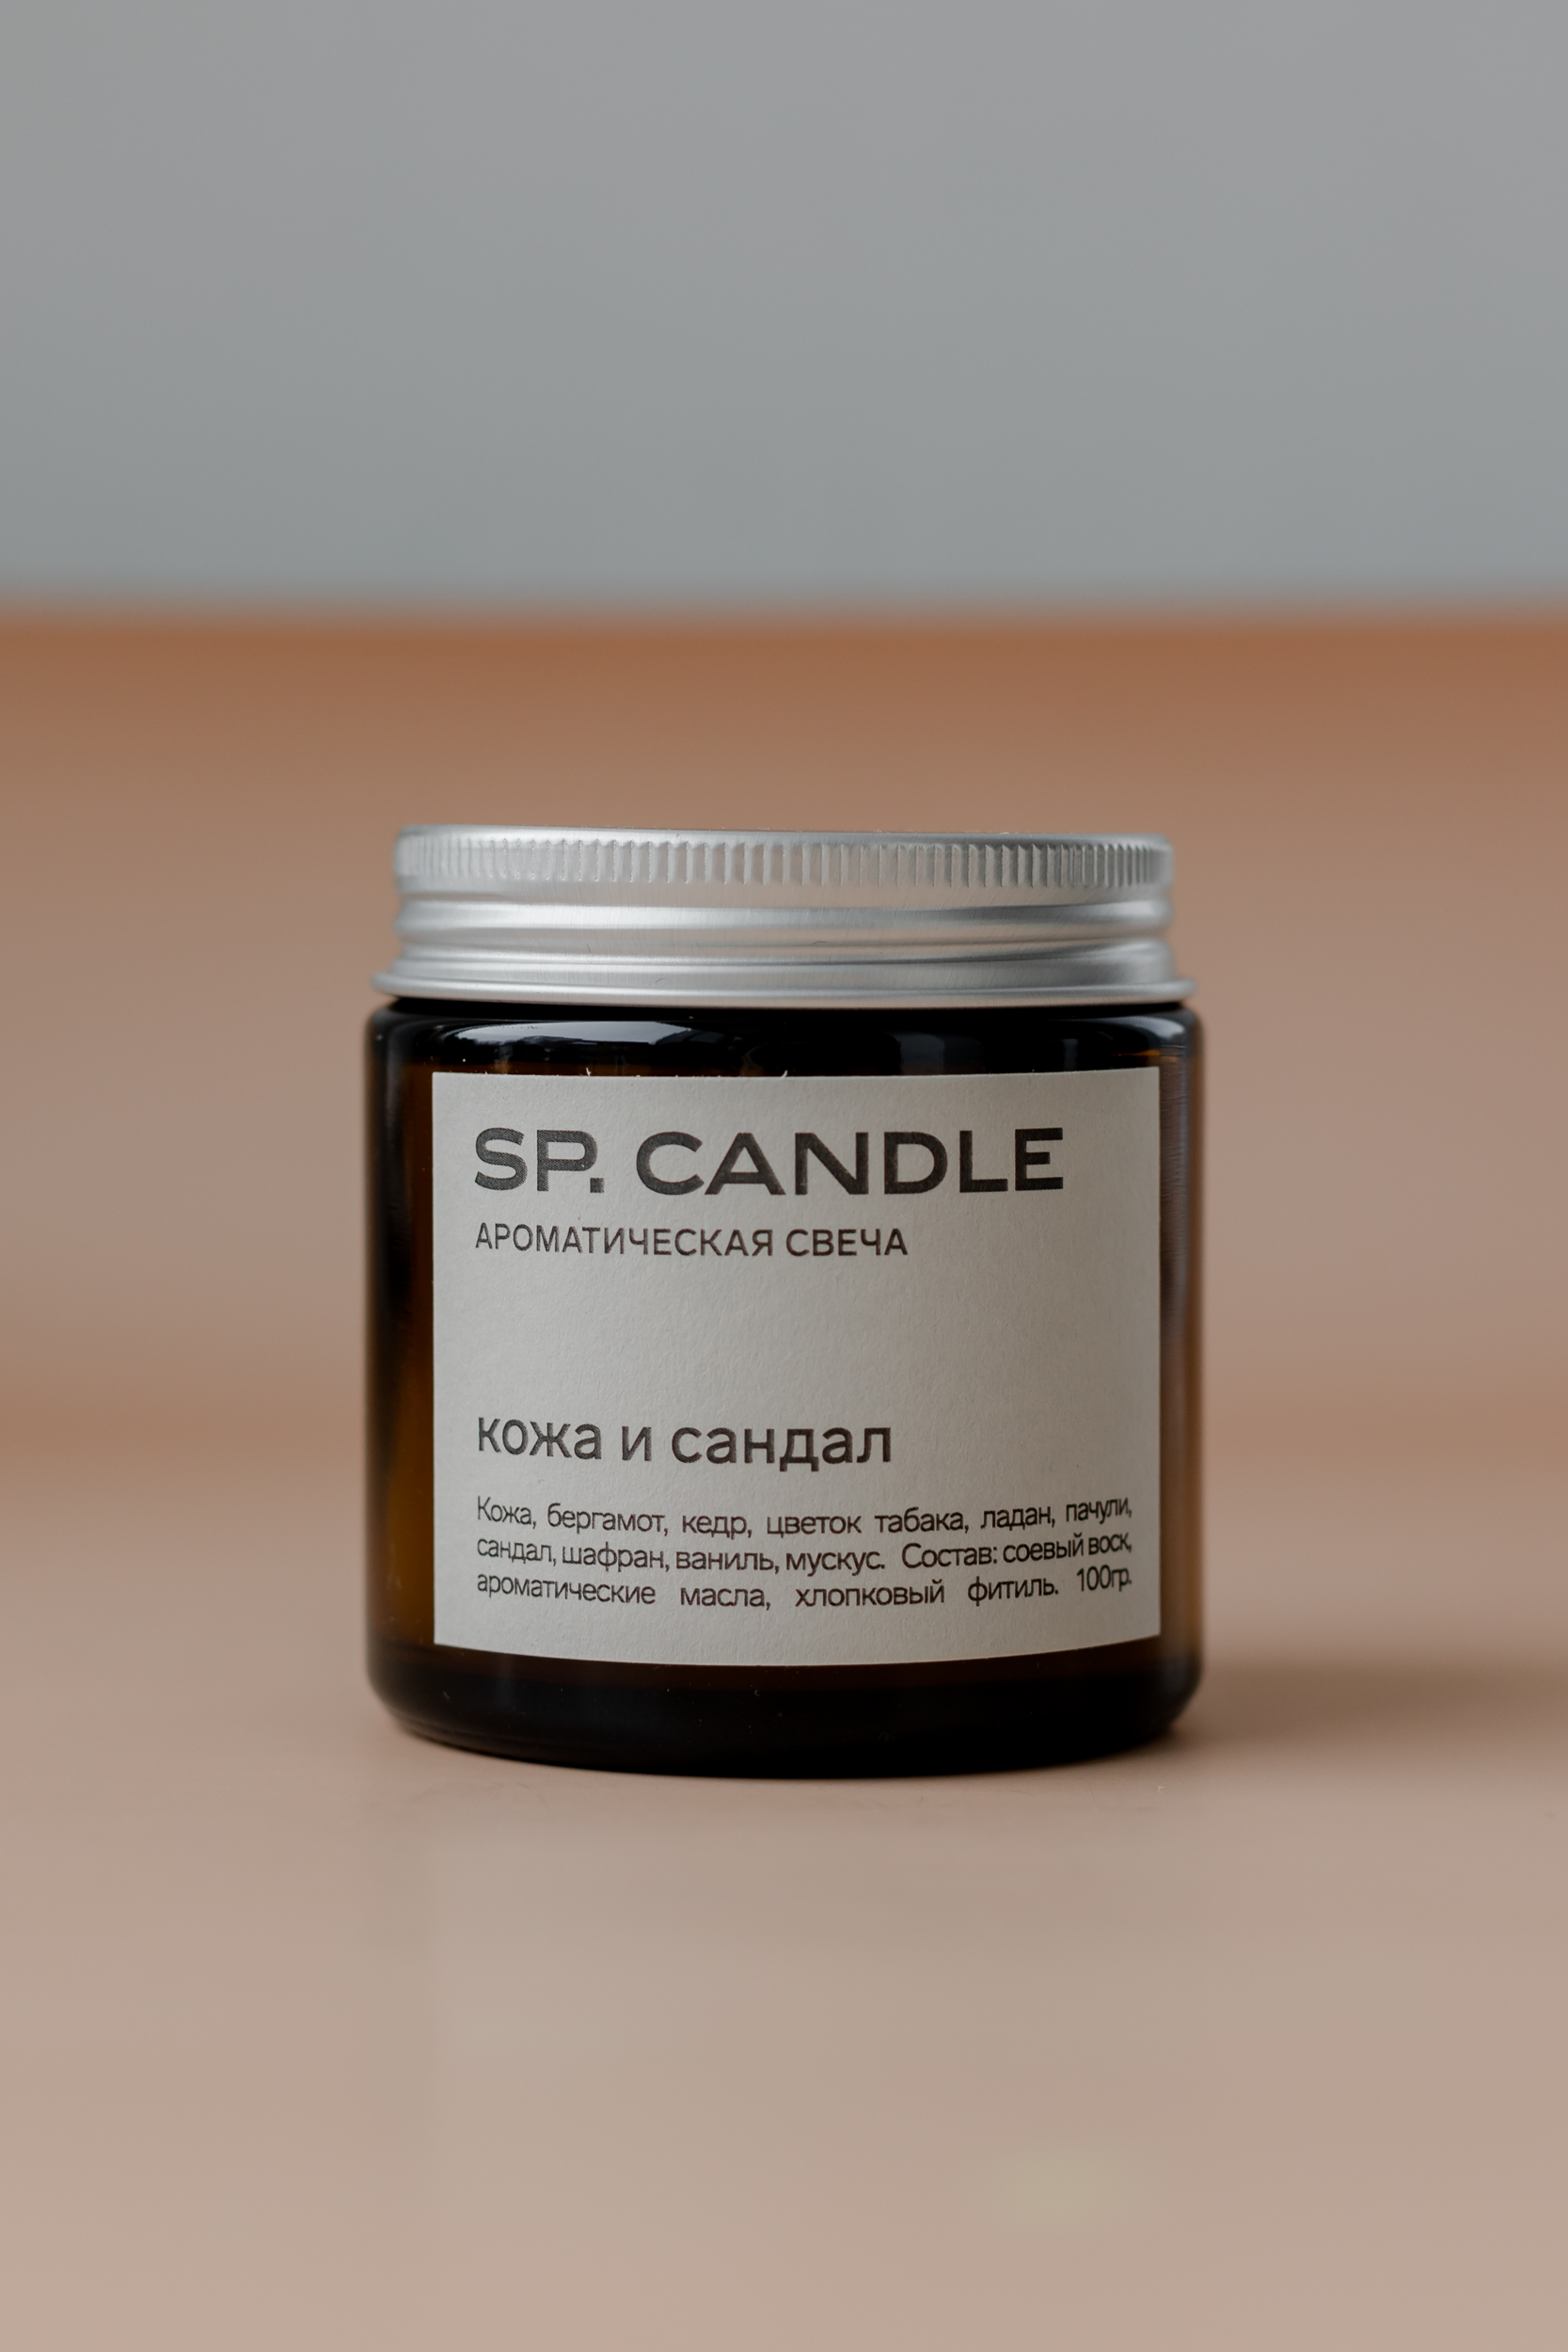 SP. CANDLE Ароматическая свеча Кожа и сандал, 100г - фото 1